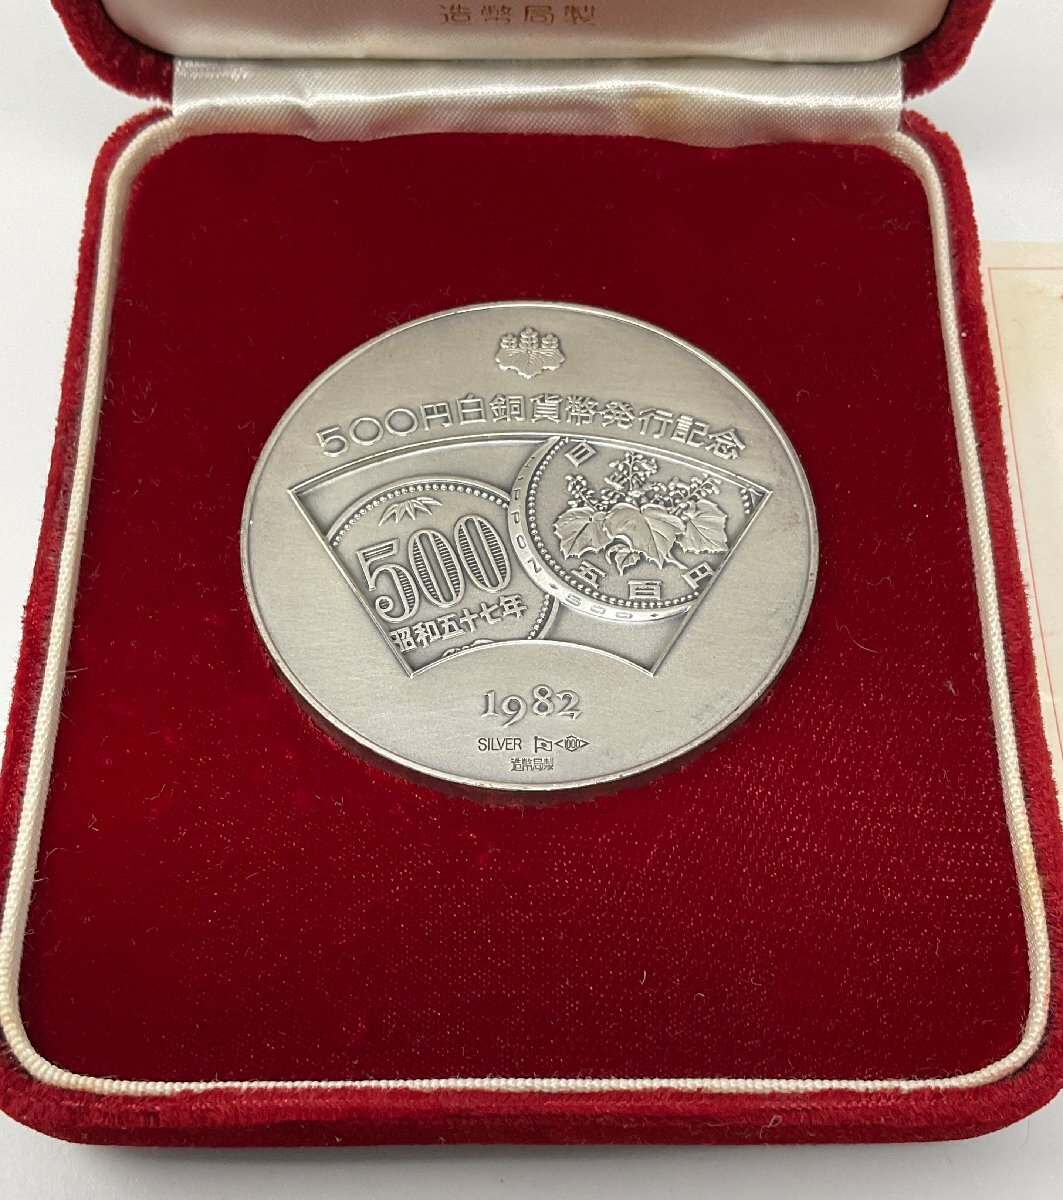 ΦΦ 五百円白銅貨発行記念メダル 1982の画像3